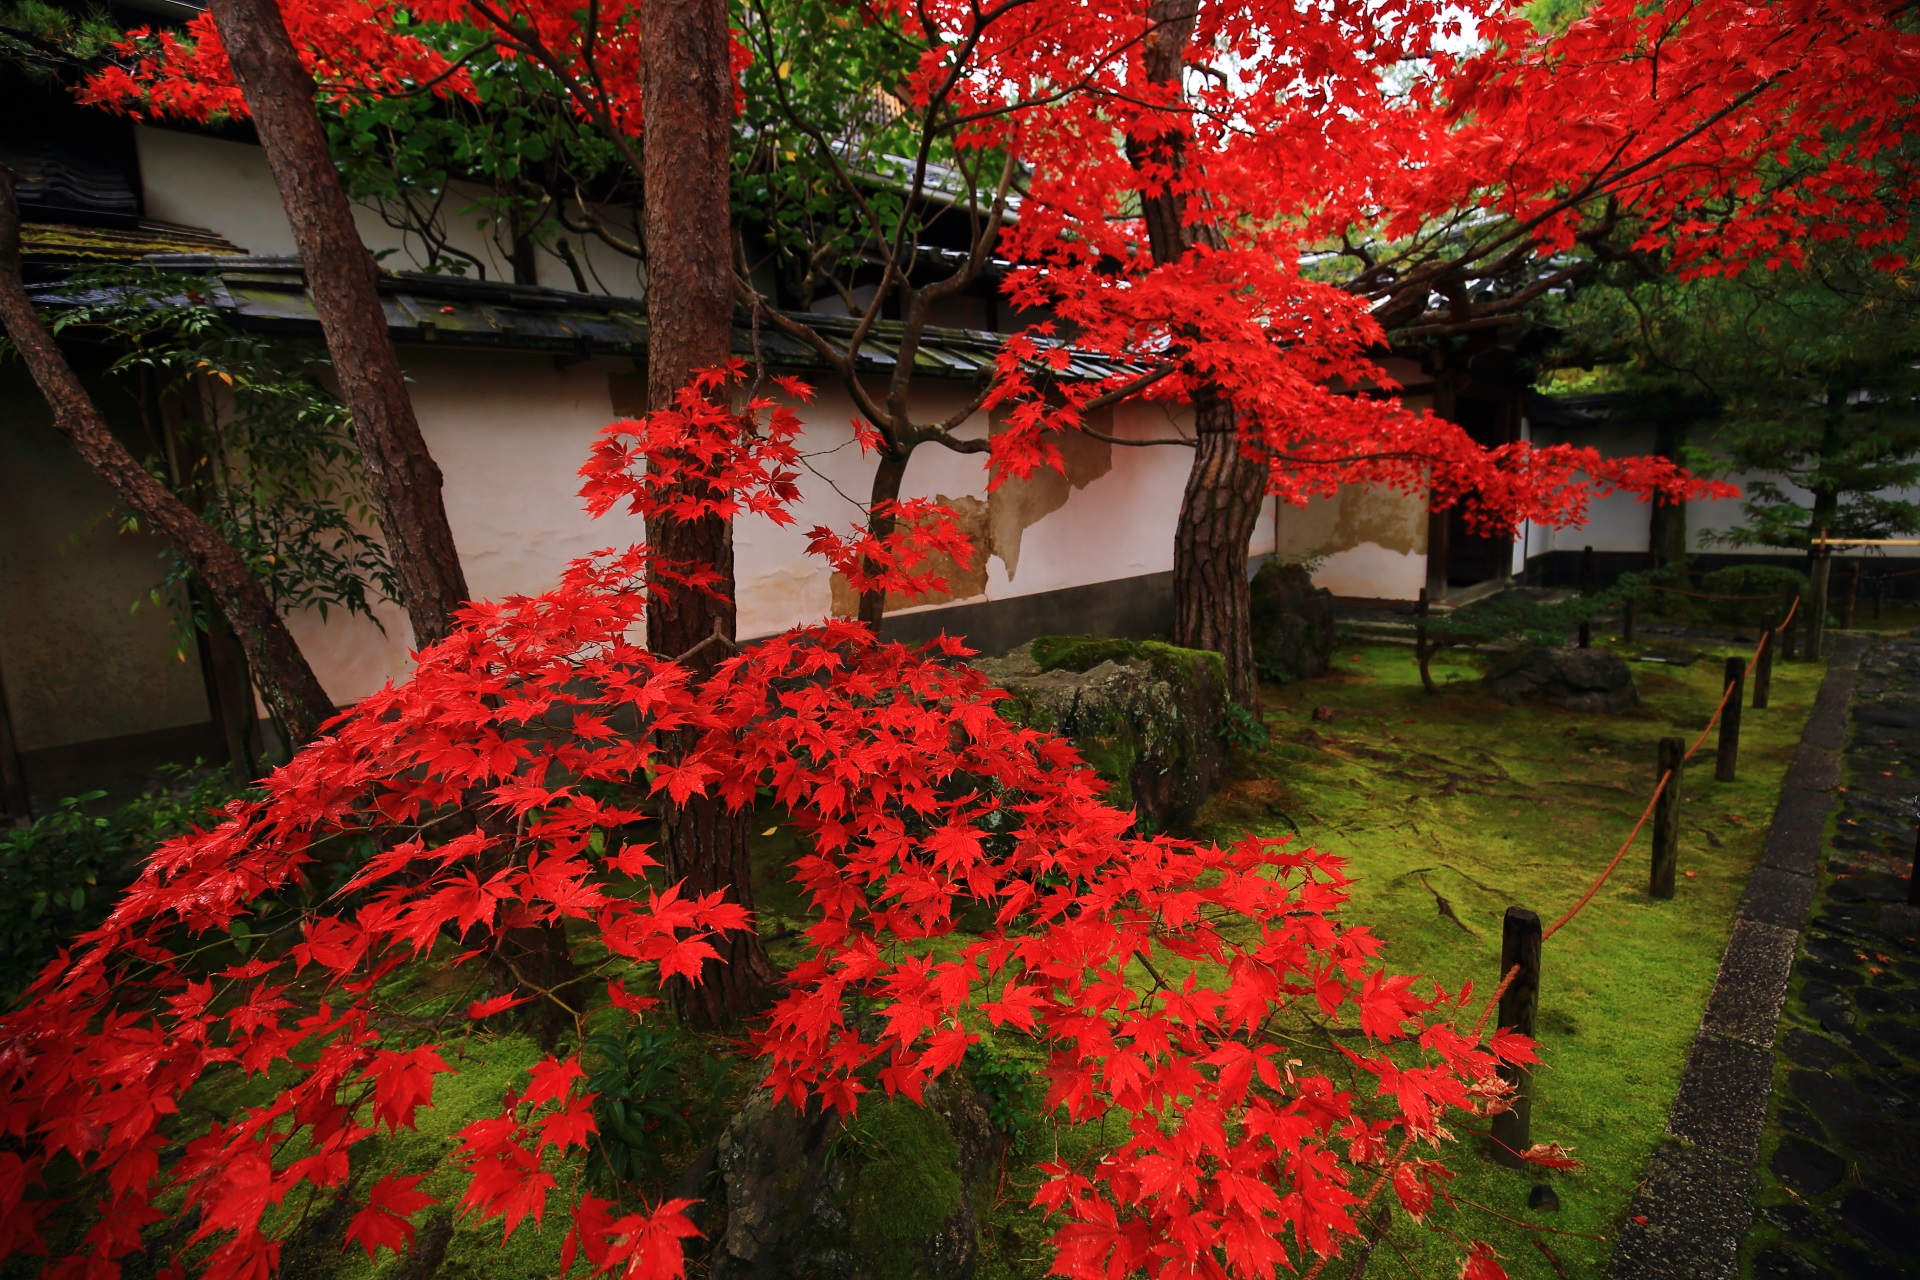 桂春院の淡い緑の苔や白壁に映える鮮烈な赤さの紅葉